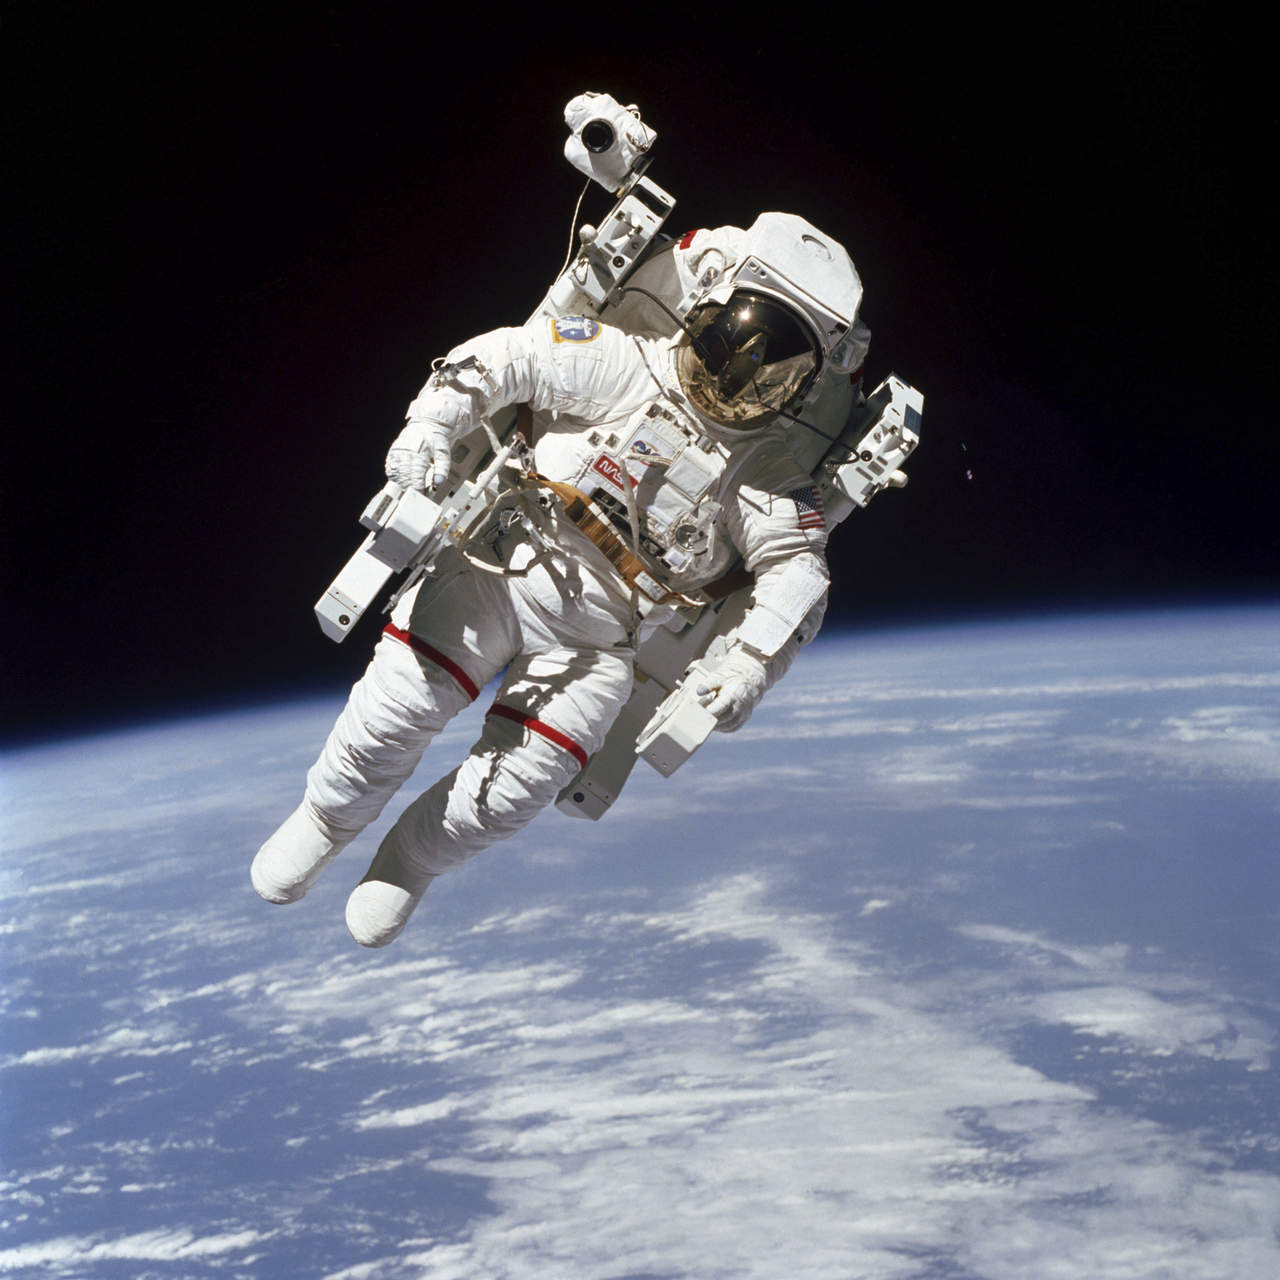 Con un propulsor, el astronauta se desplazó más de 100 metros de la nave espacial Challenger durante el histórico hito. (AP)